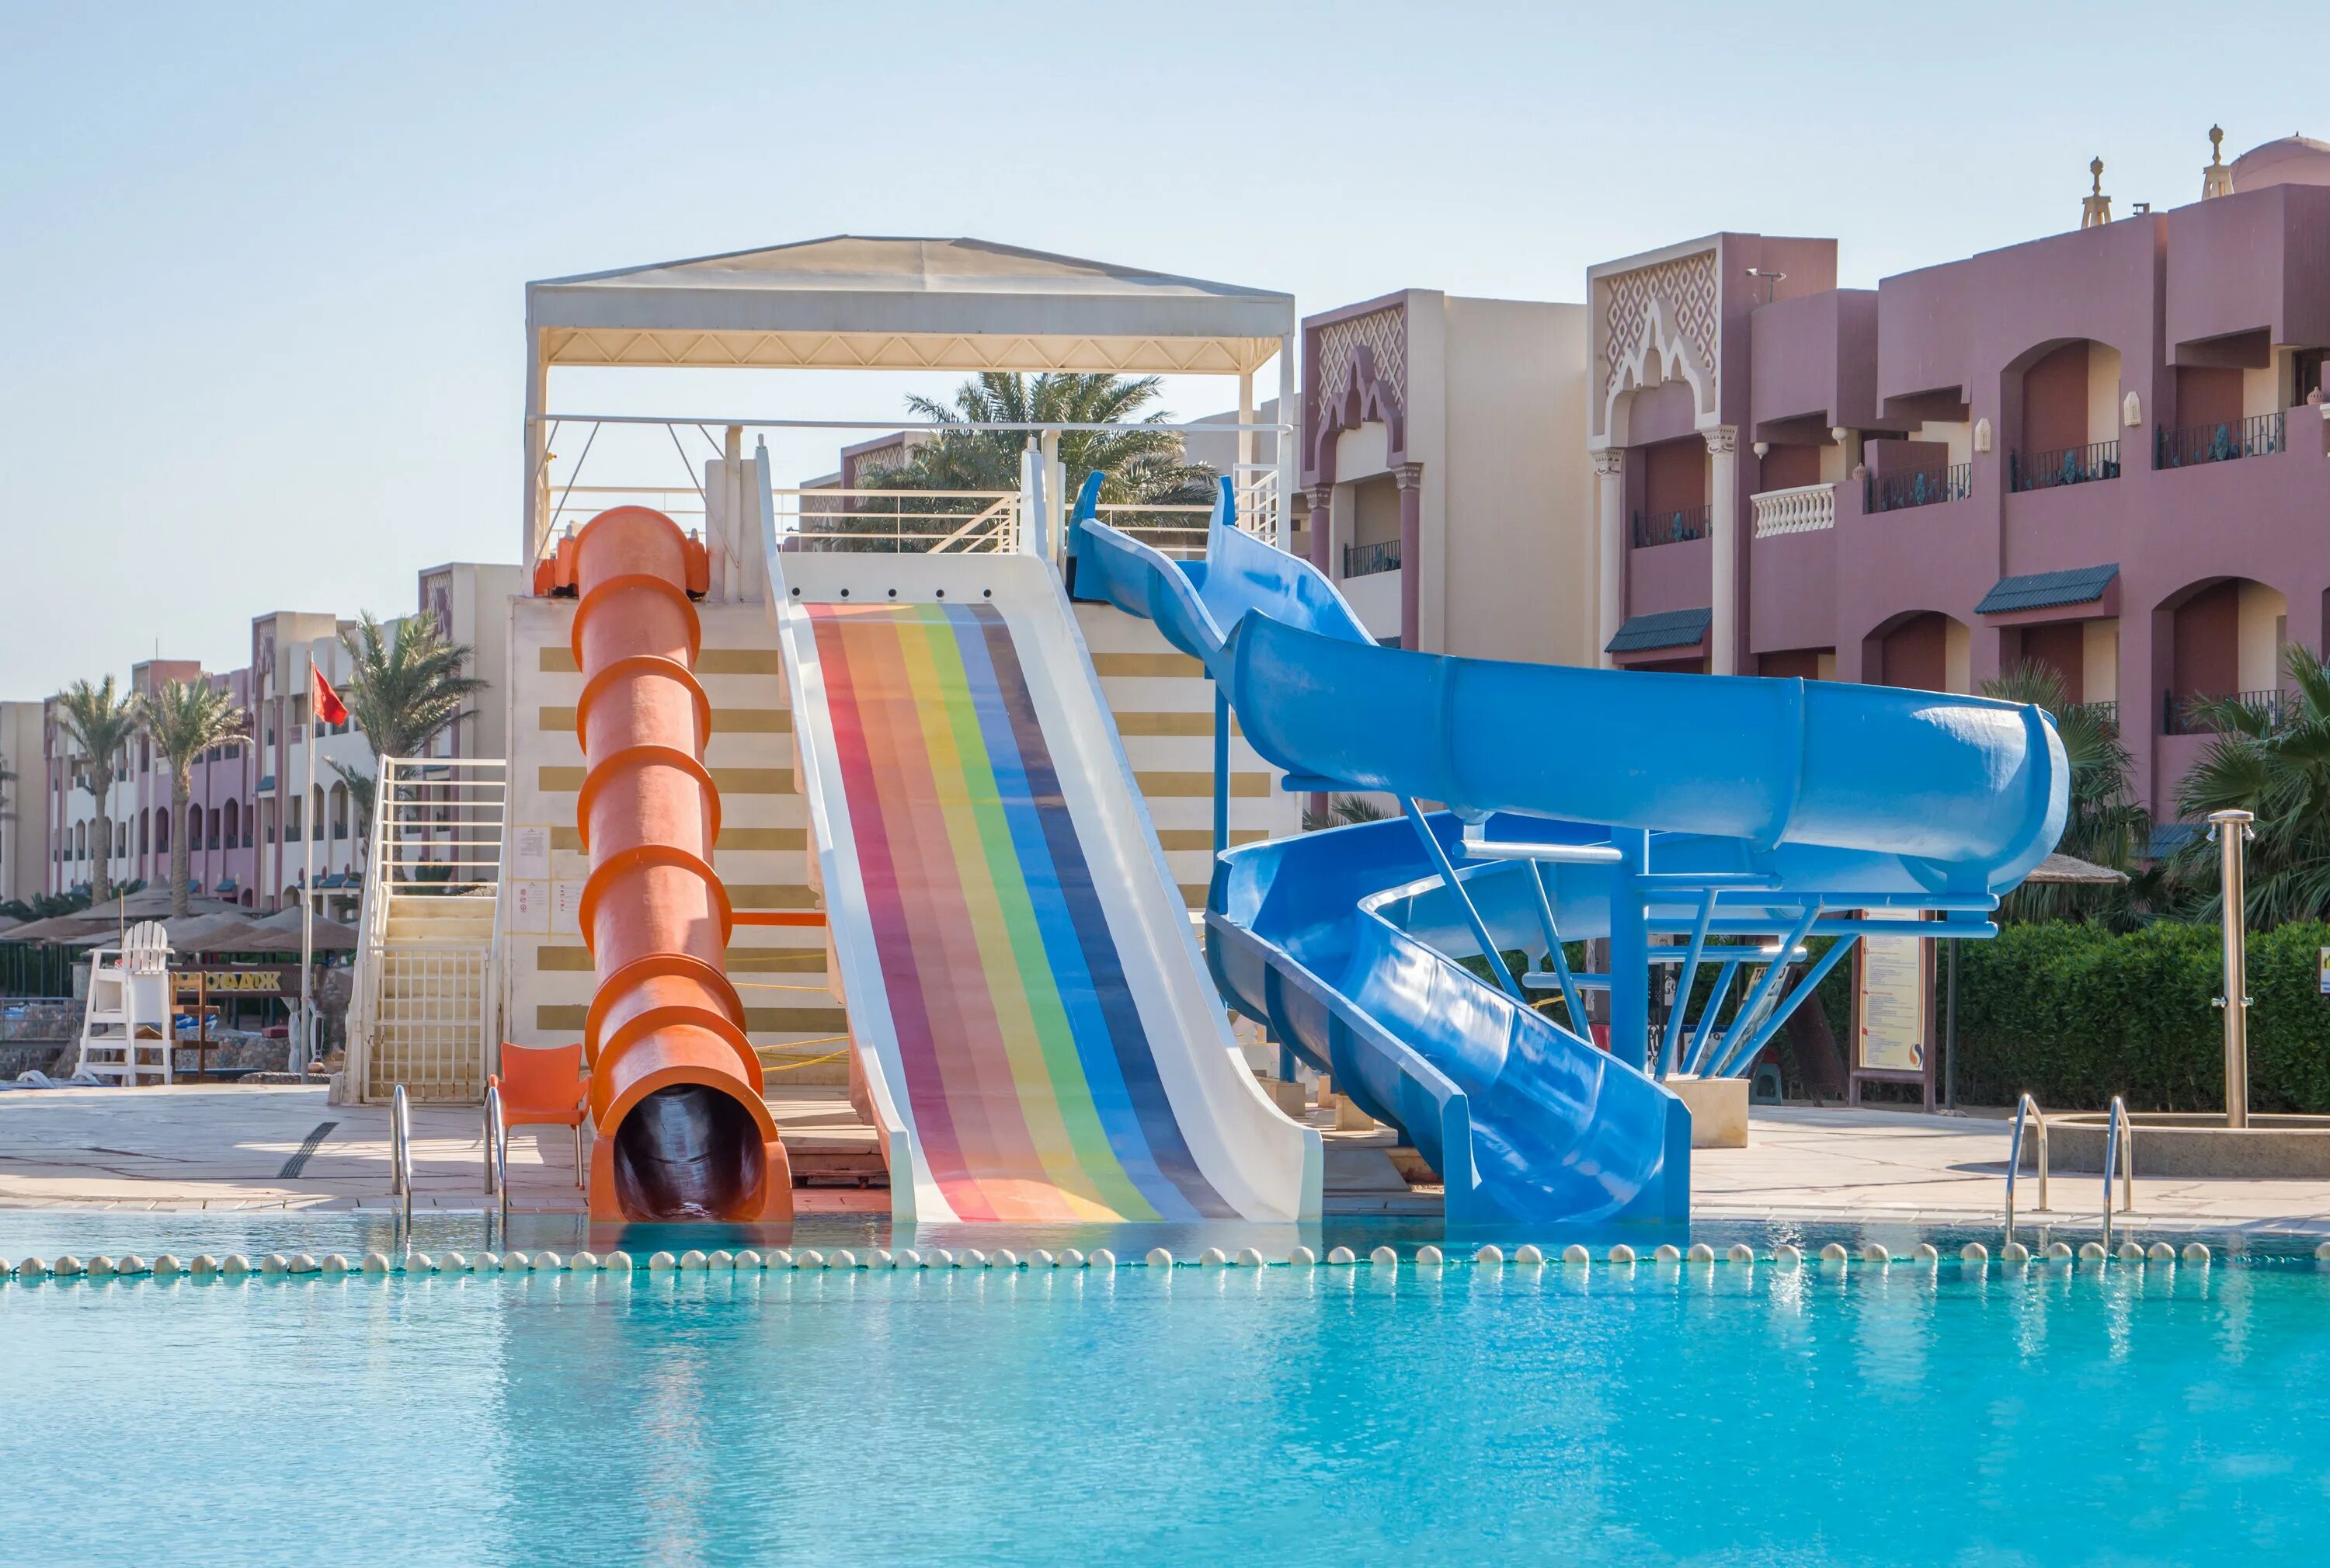 Отель Sunny Days Resort Spa Aqua Park 4. Sunny Days Resort Aqua Park 4 Хургада. Египет отель Санни дейс Хургада. Отель Египет Санни Дэй Резорт спа 4. Sunny days 2